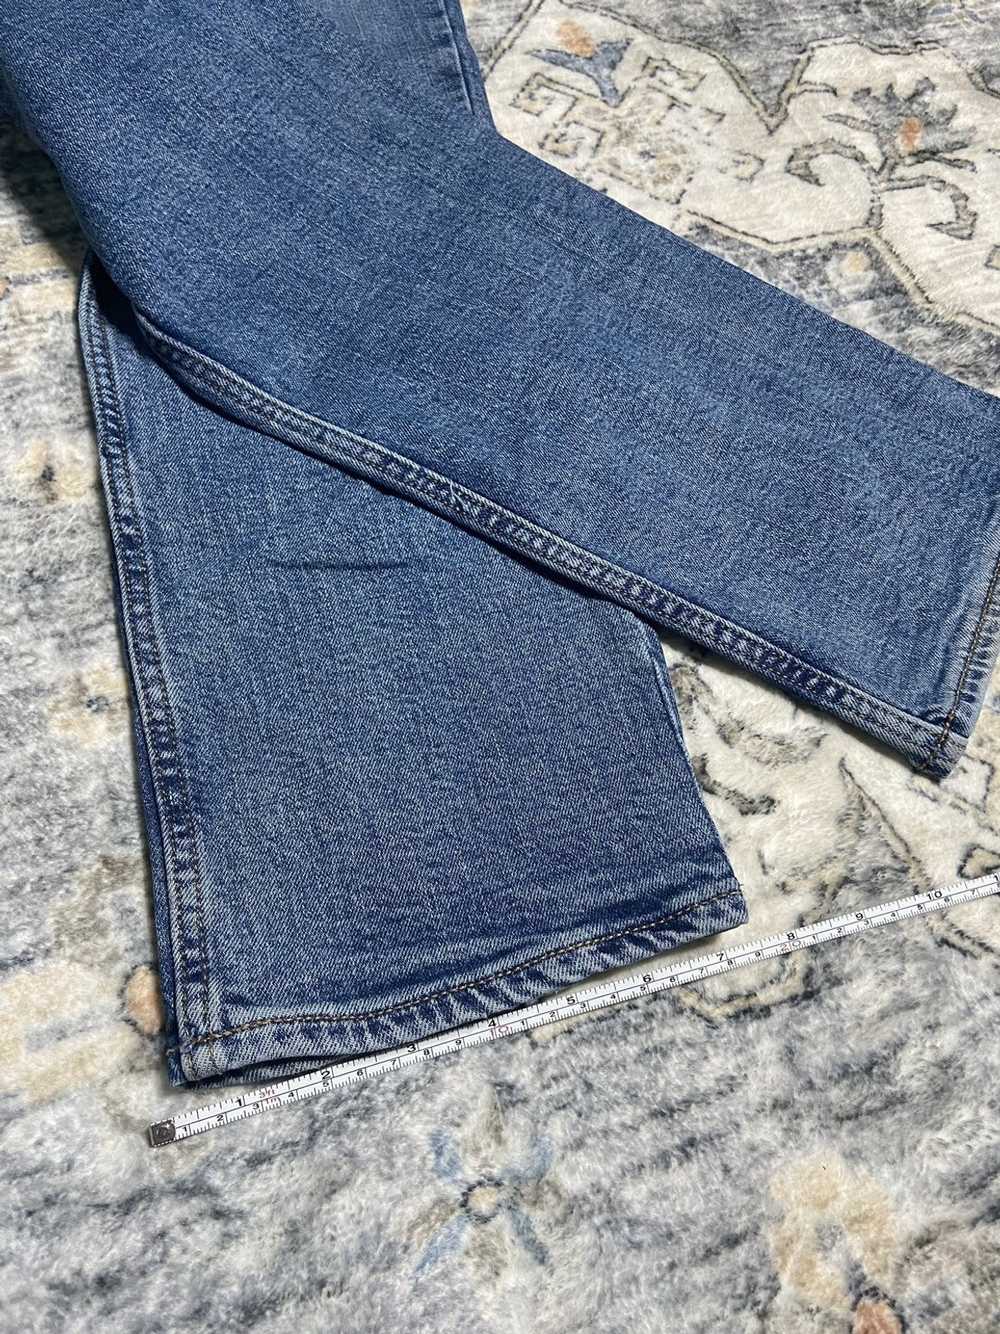 Jean × Old Navy × Vintage Vintage Denim Jeans - image 4